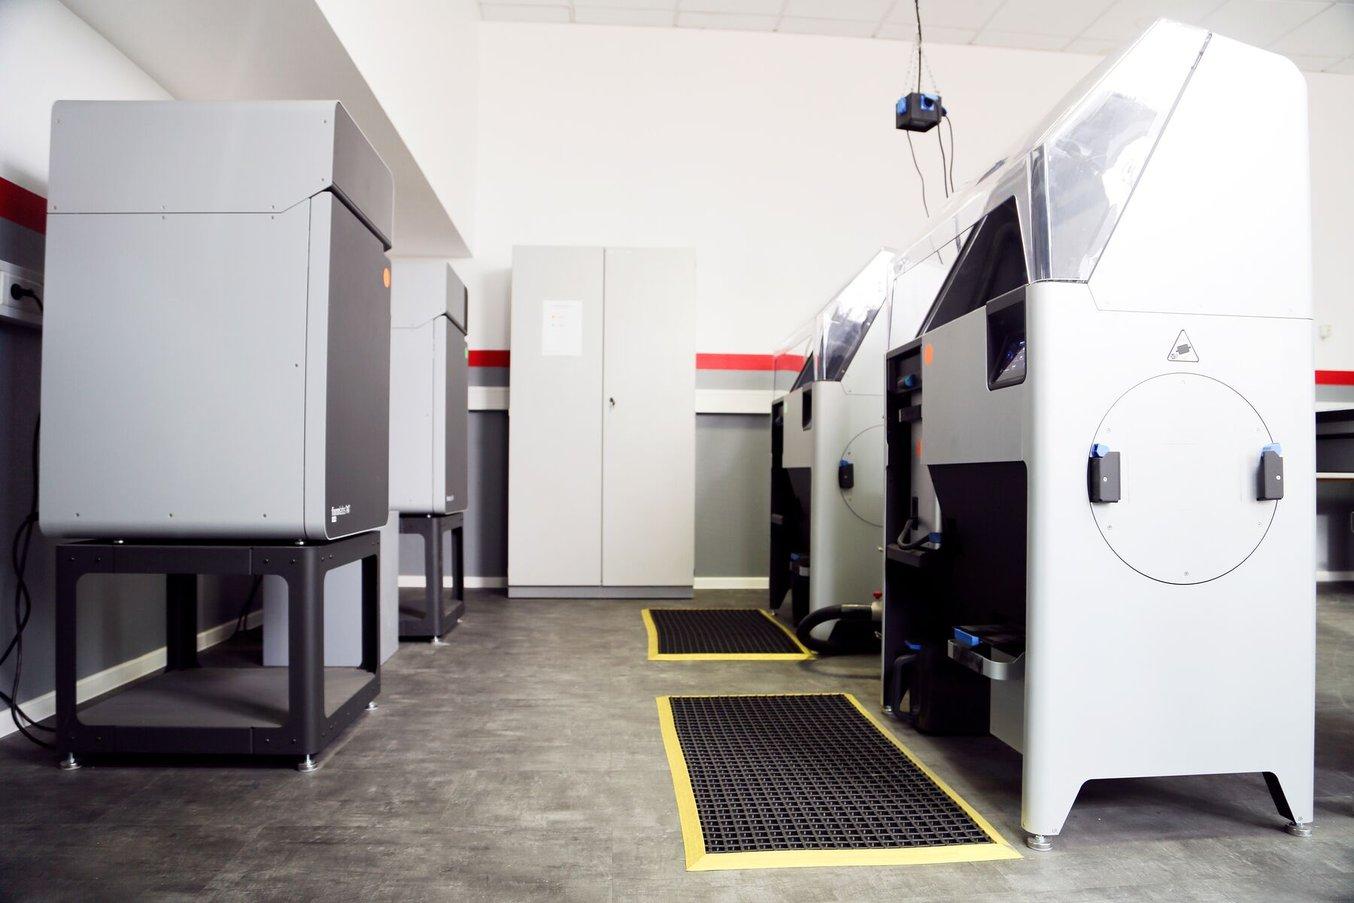 L'atelier d'impression 3D de Neumünster dispose de dix imprimantes 3D différentes, dont deux imprimantes SLS de la série Fuse.